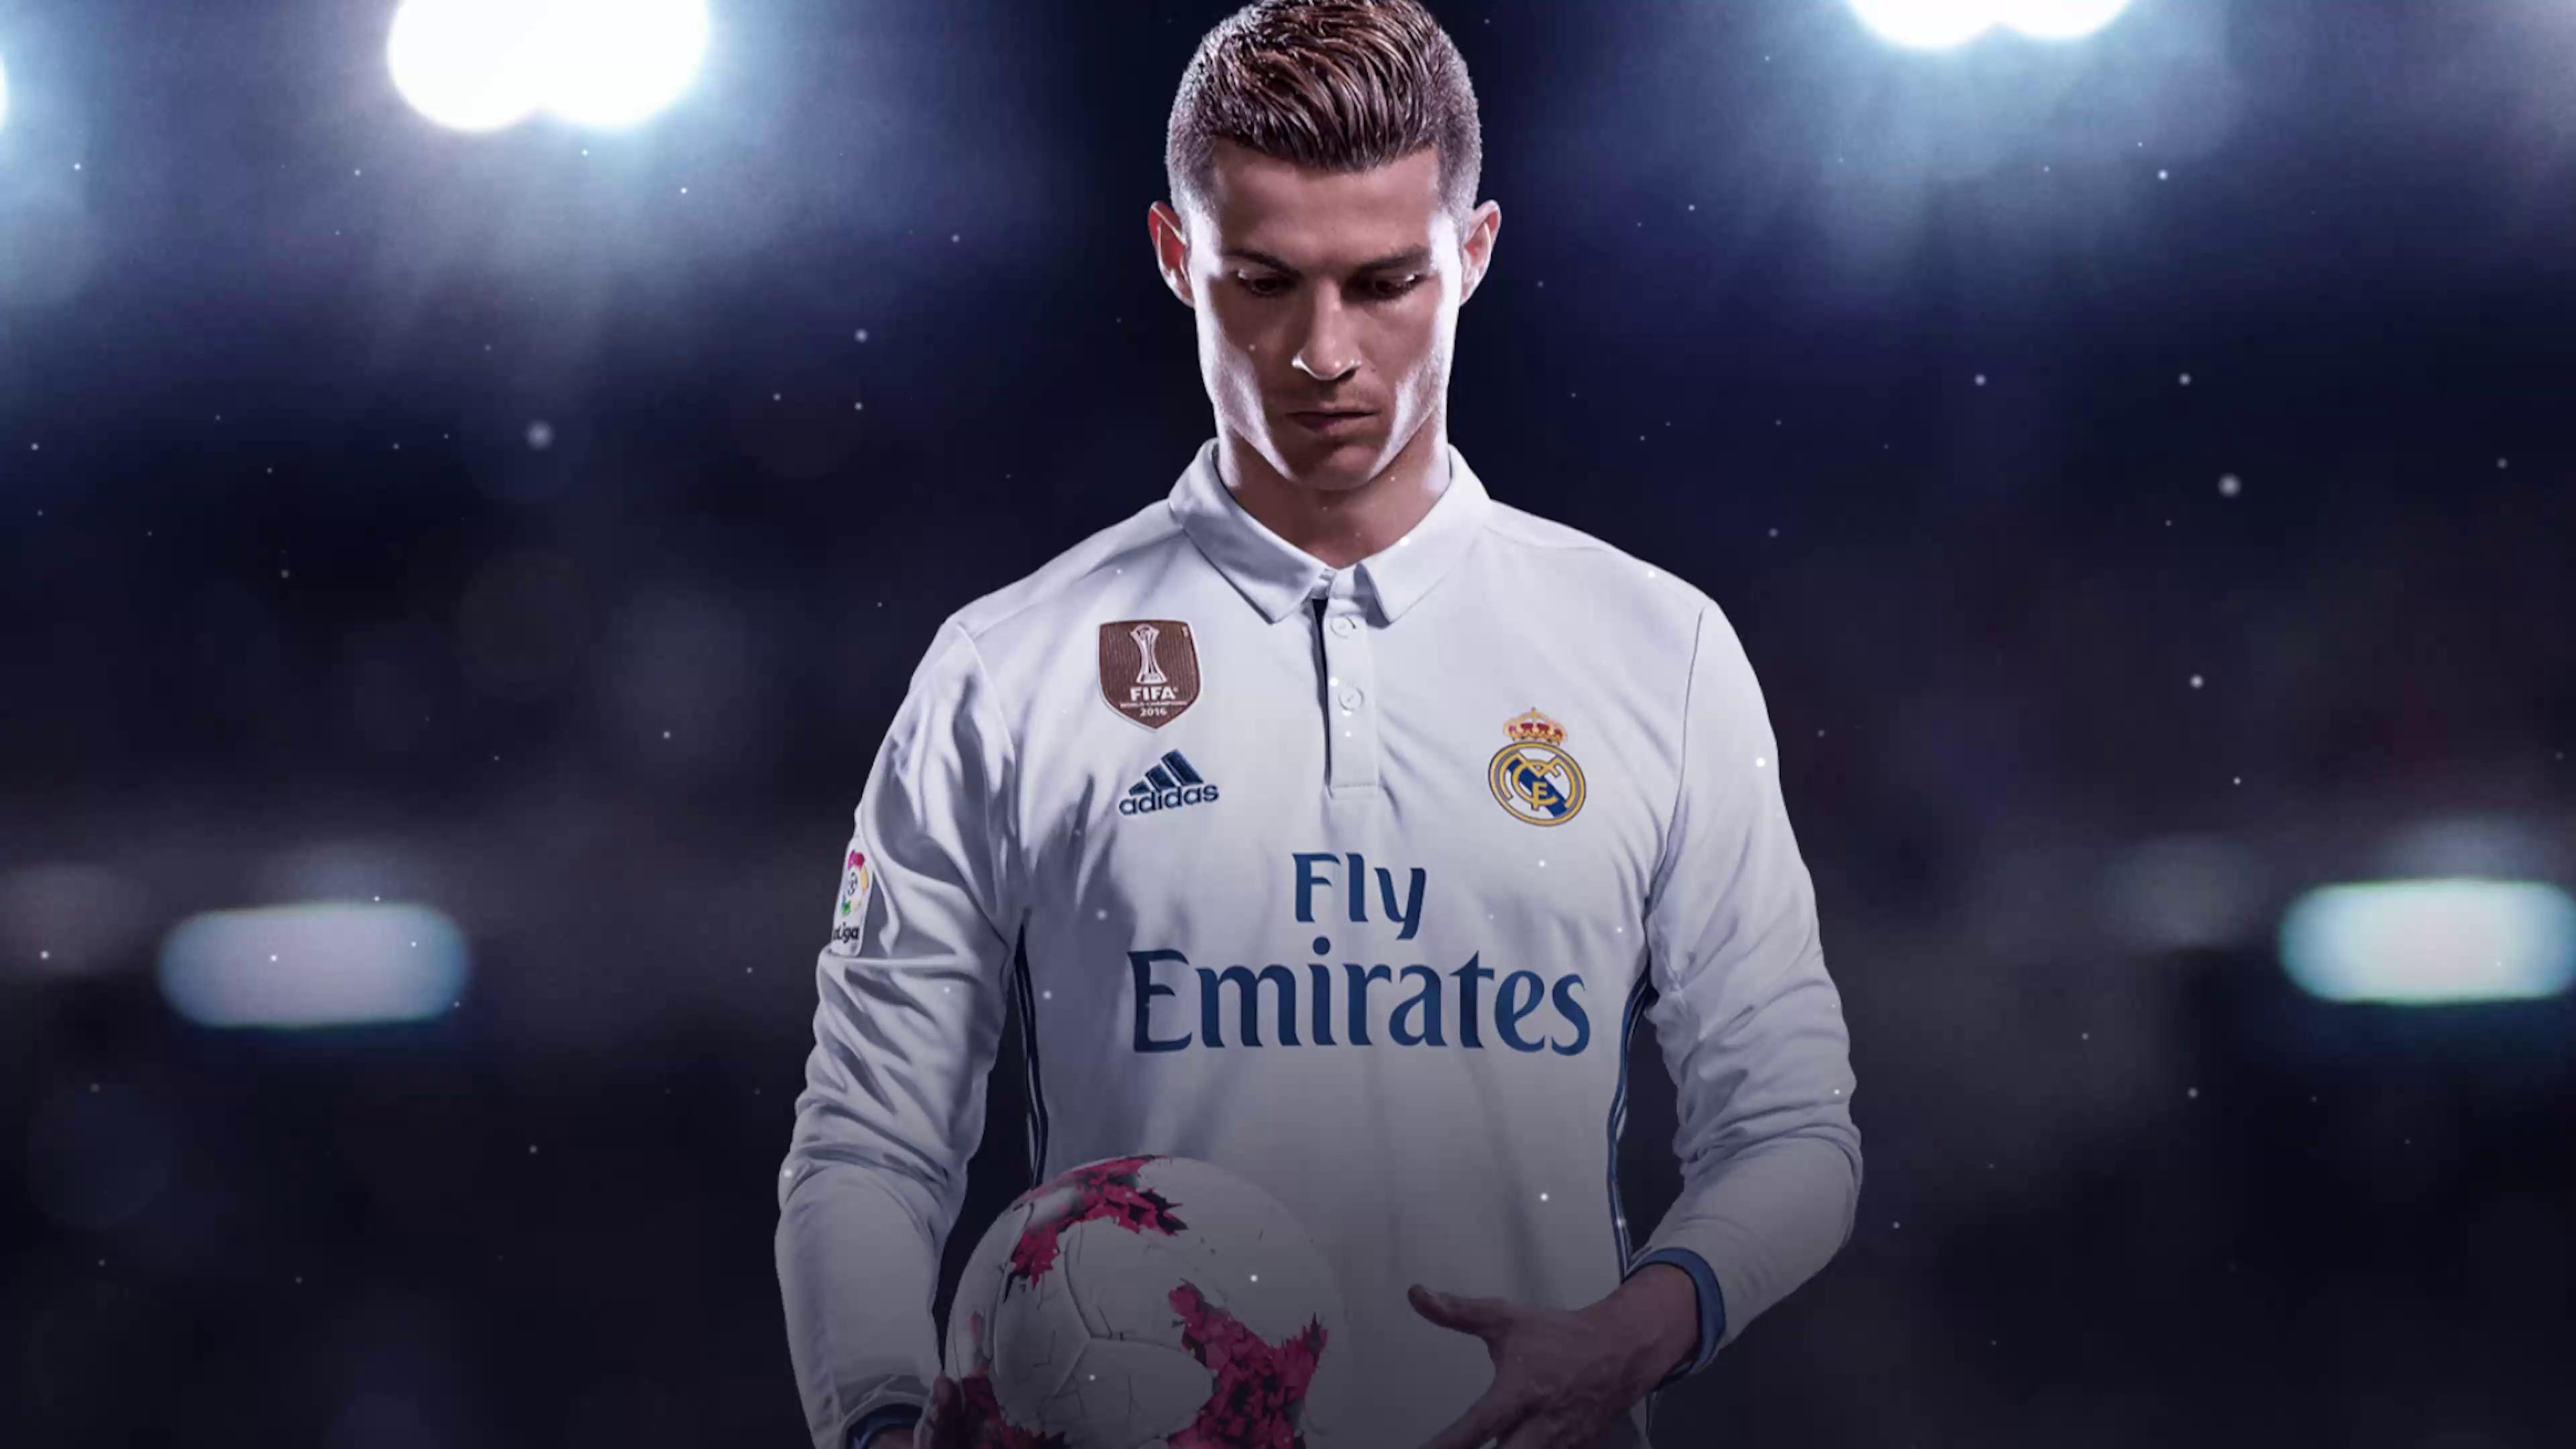 Tuyển chọn hình nền wallpaper 4k cr7 đẹp và nổi bật nhất dành cho fan của  cầu thủ Ronaldo